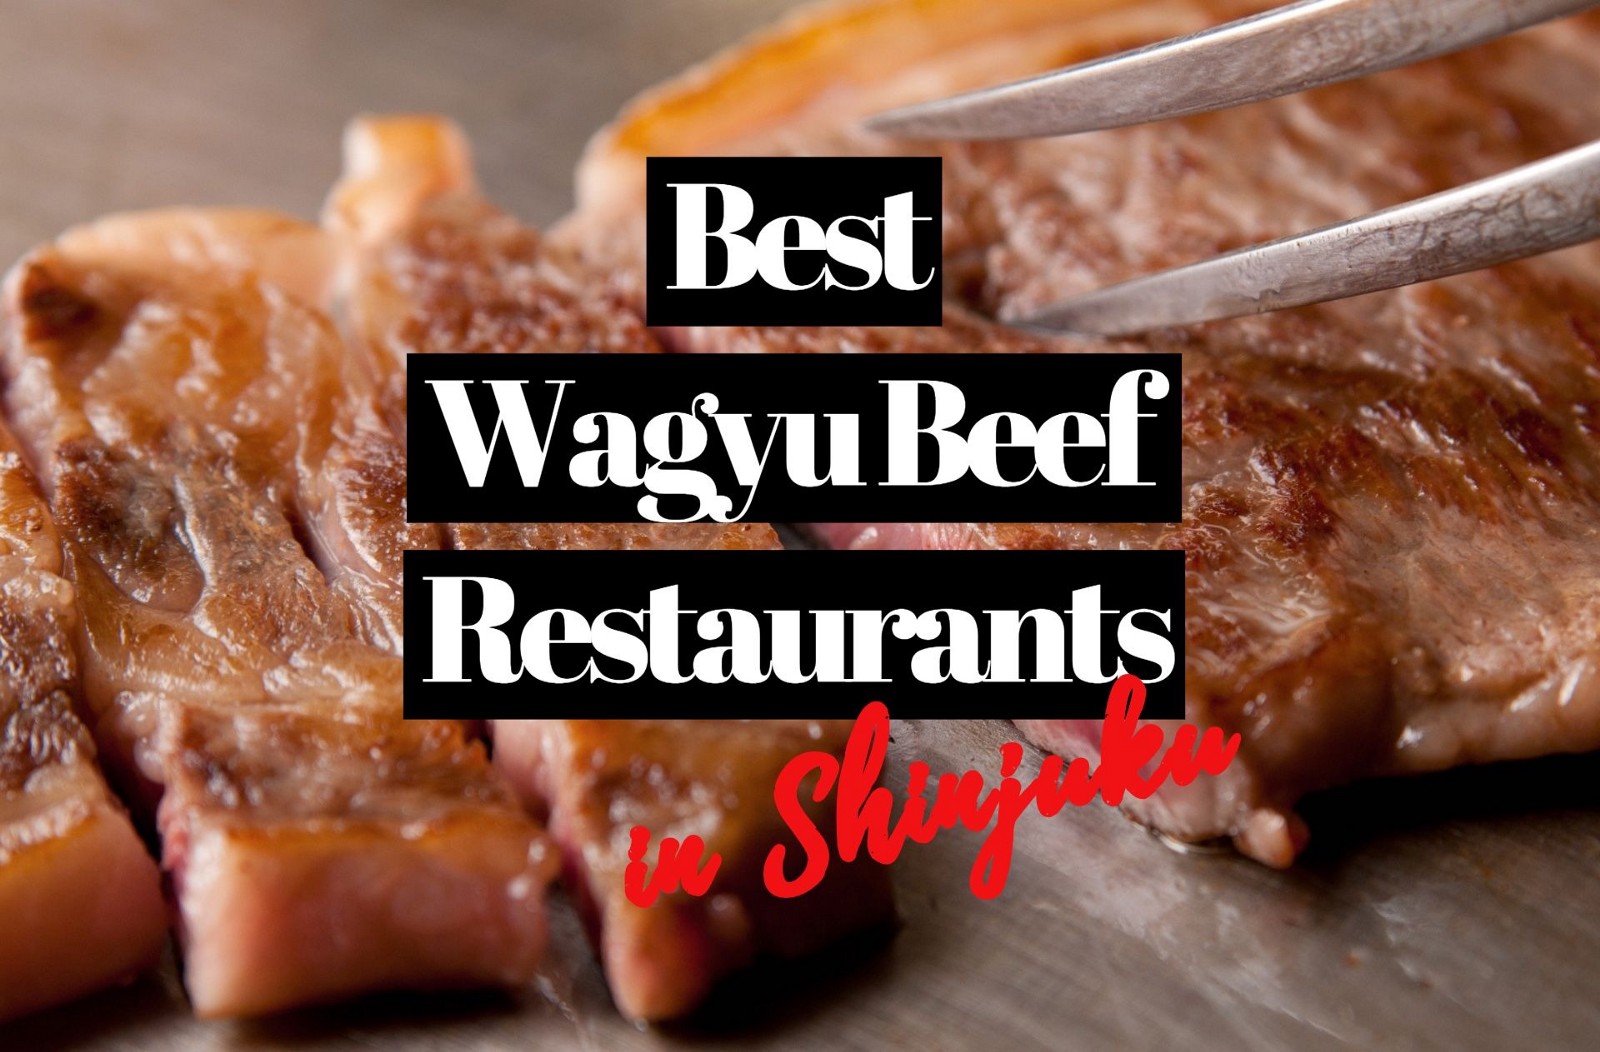 6 Best Wagyu Beef Restaurants in Shinjuku Tokyo